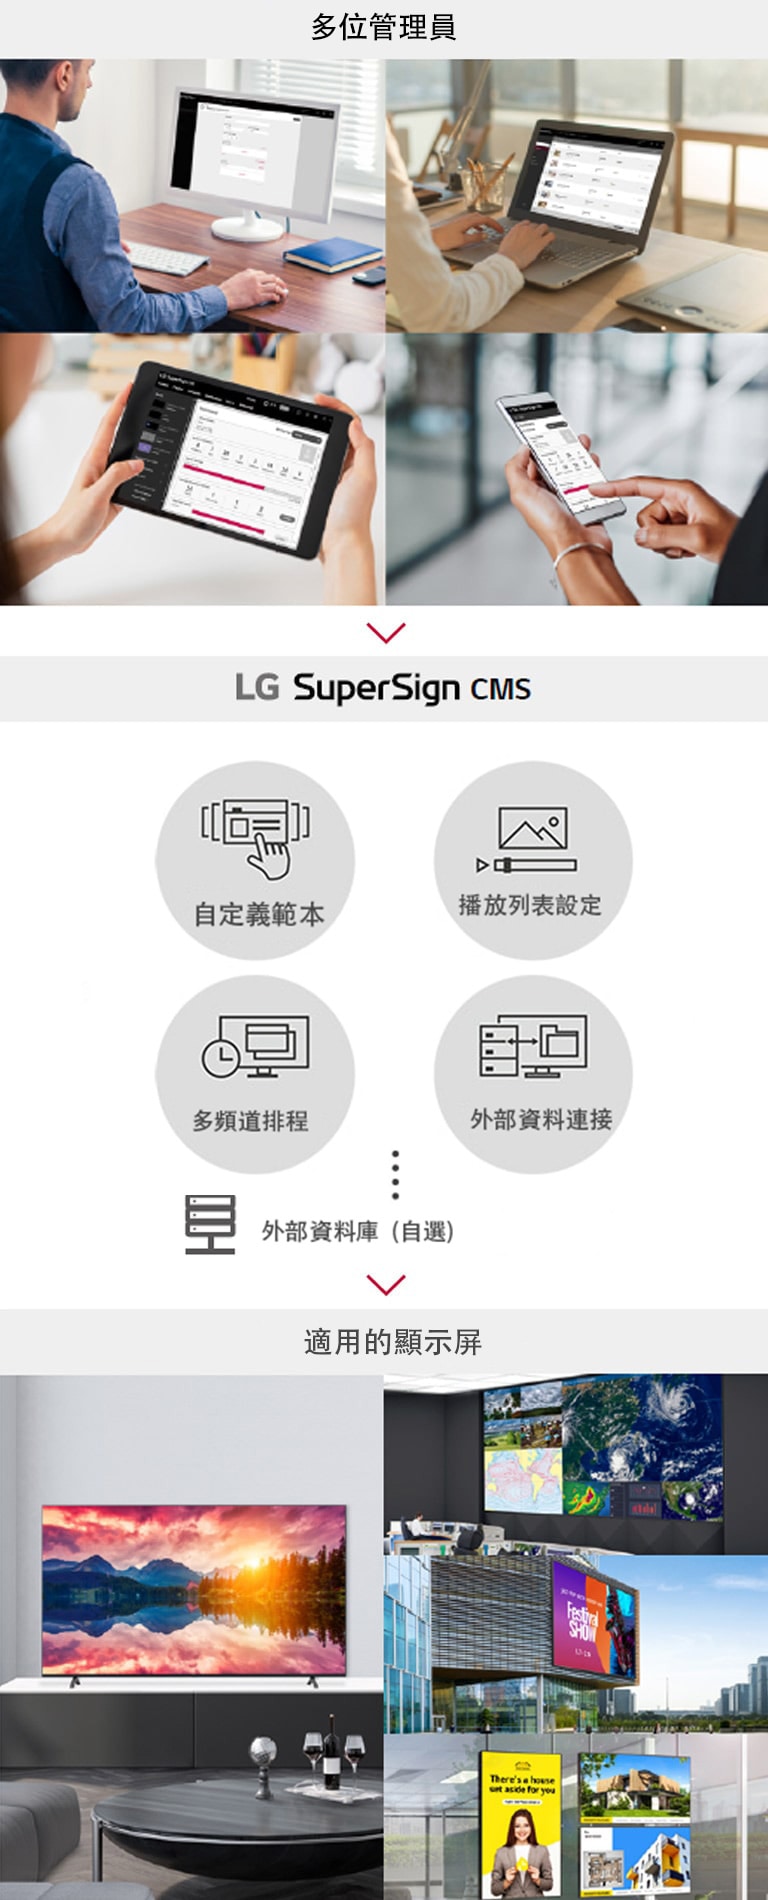 多位管理員均可透過個人電腦、手提電腦、屏幕電腦及流動裝置存取 LG SuperSign CMS，以創建、控制和發佈按照多元顯示屏定製的數碼媒體內容。